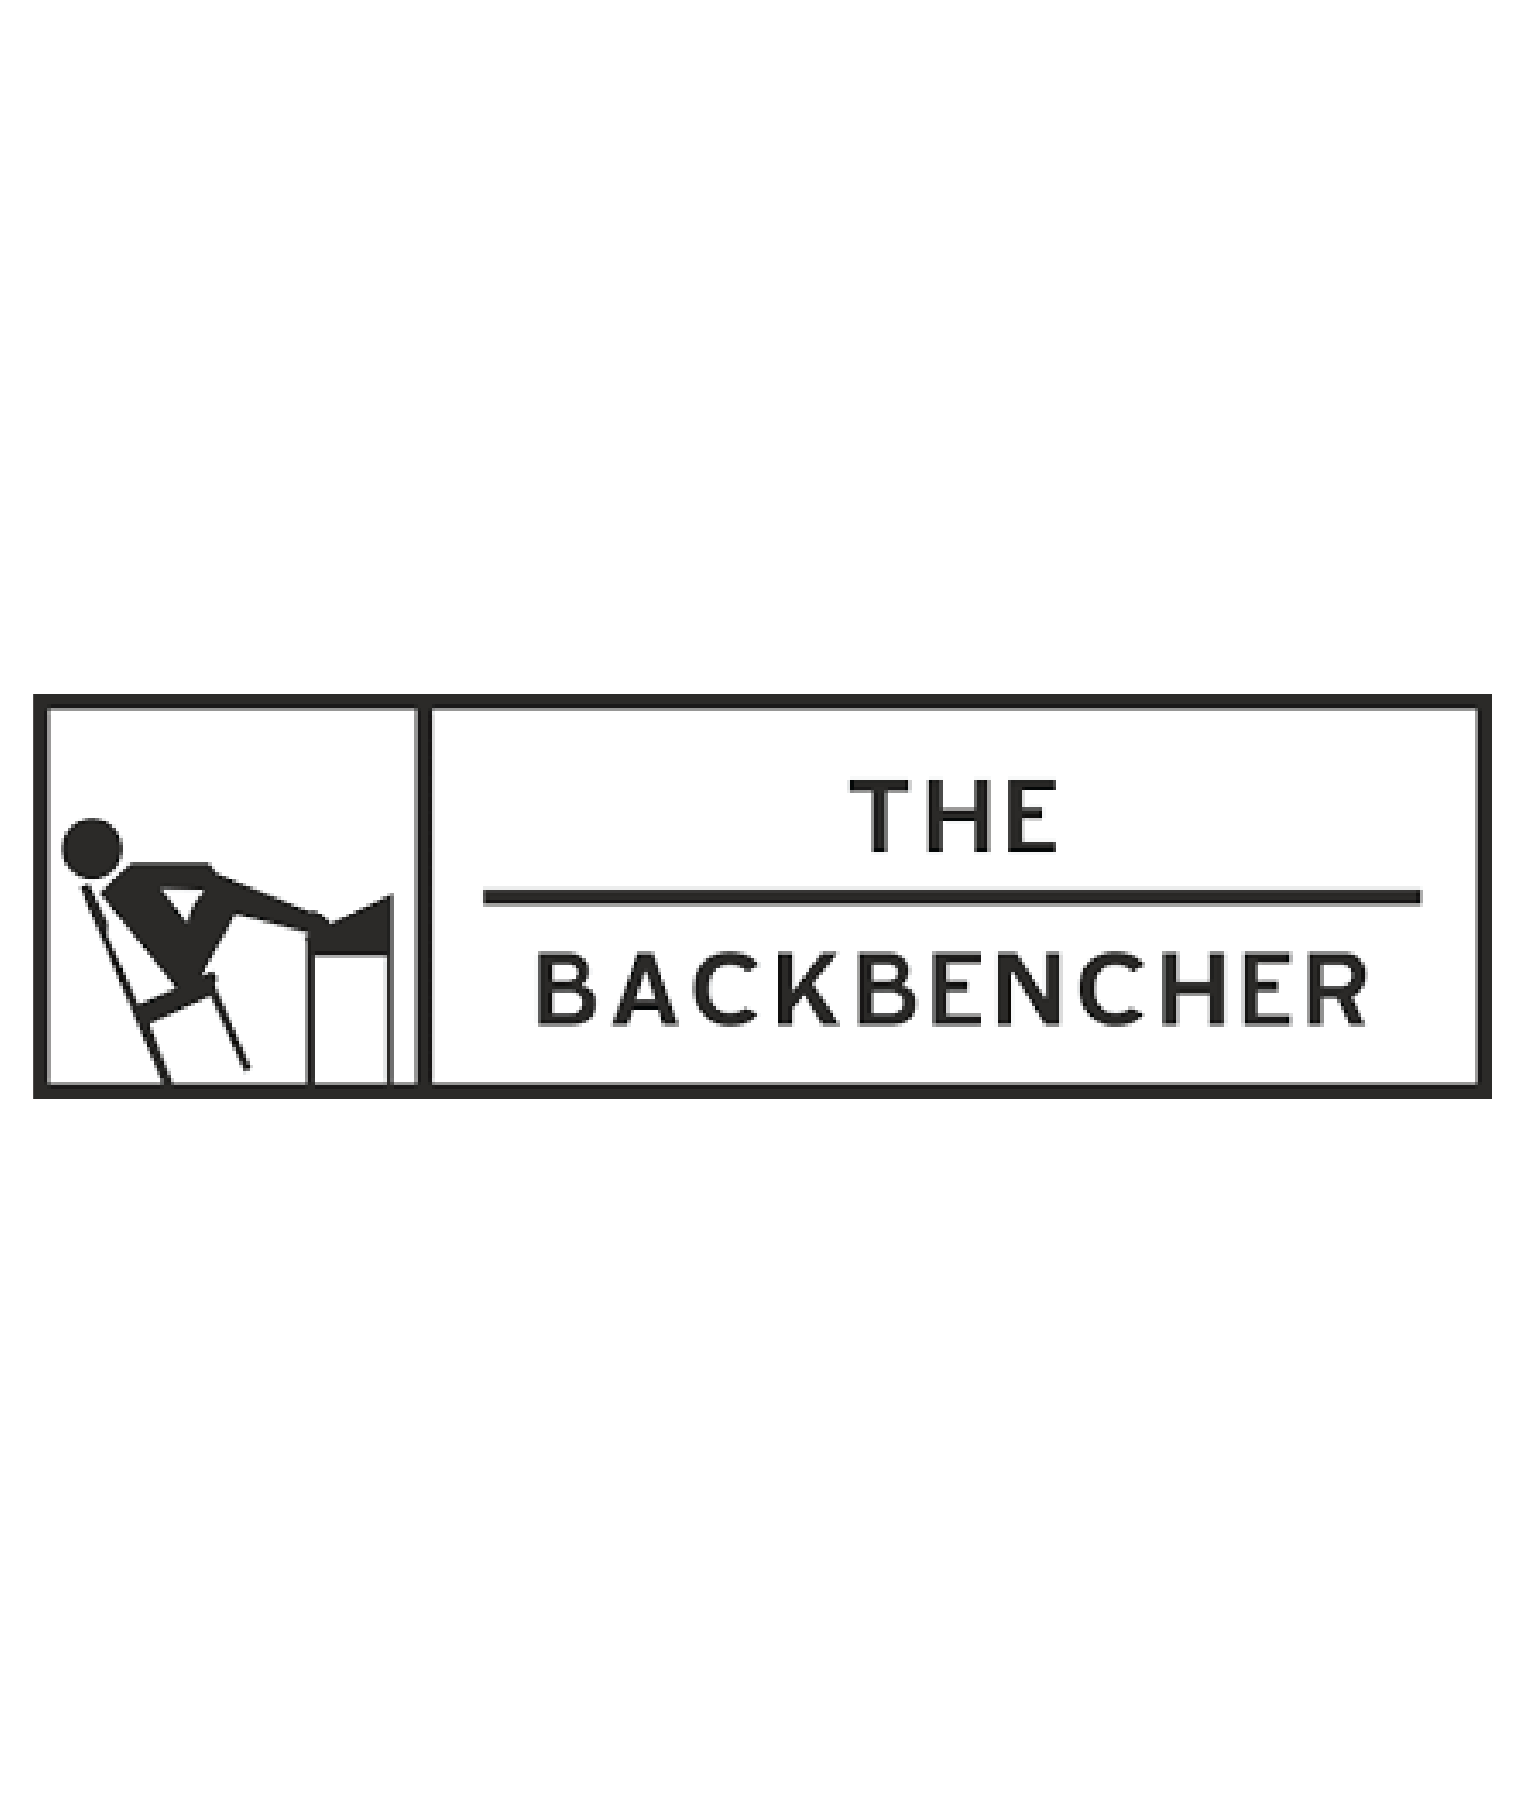 The Backbencher